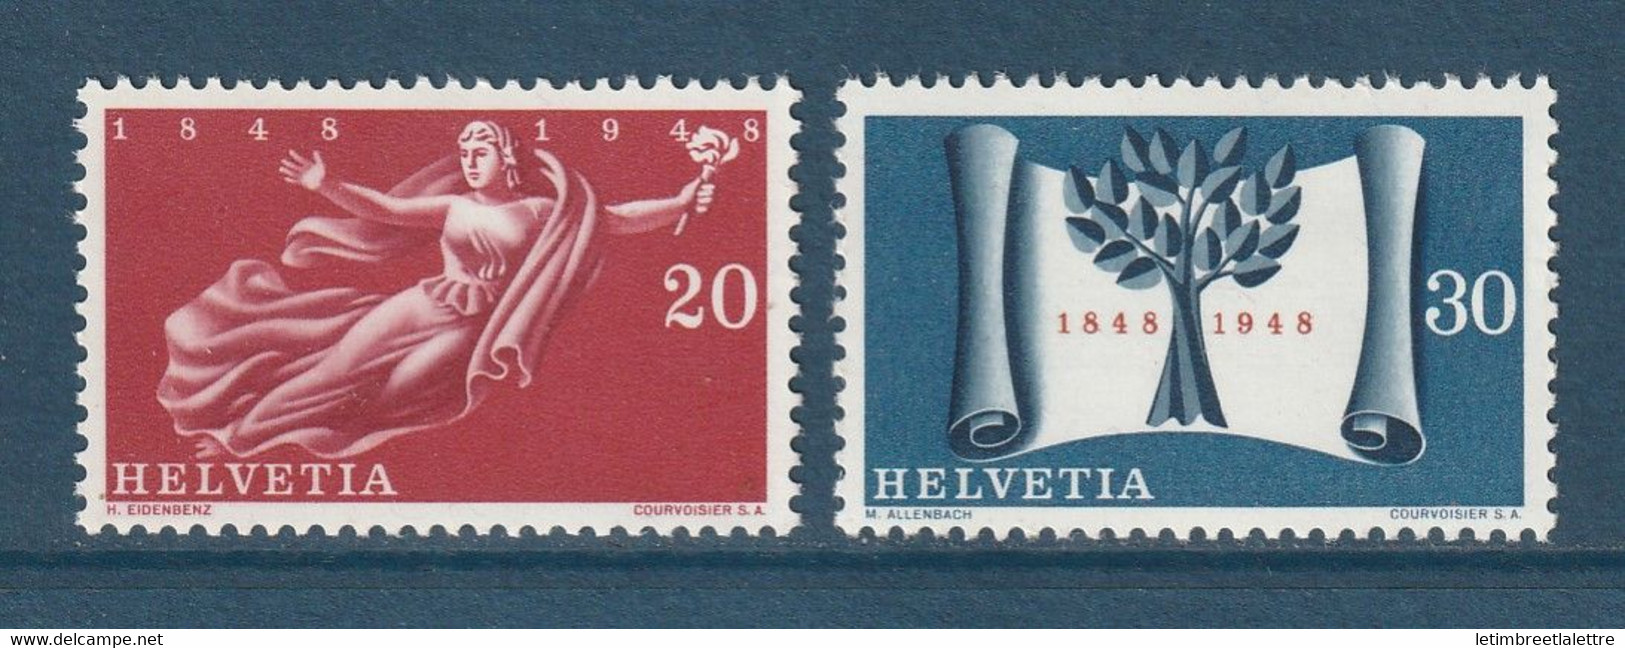 ⭐ Suisse - YT N° 455 Et 456 ** - Neuf Sans Charnière - 1948 ⭐ - Neufs